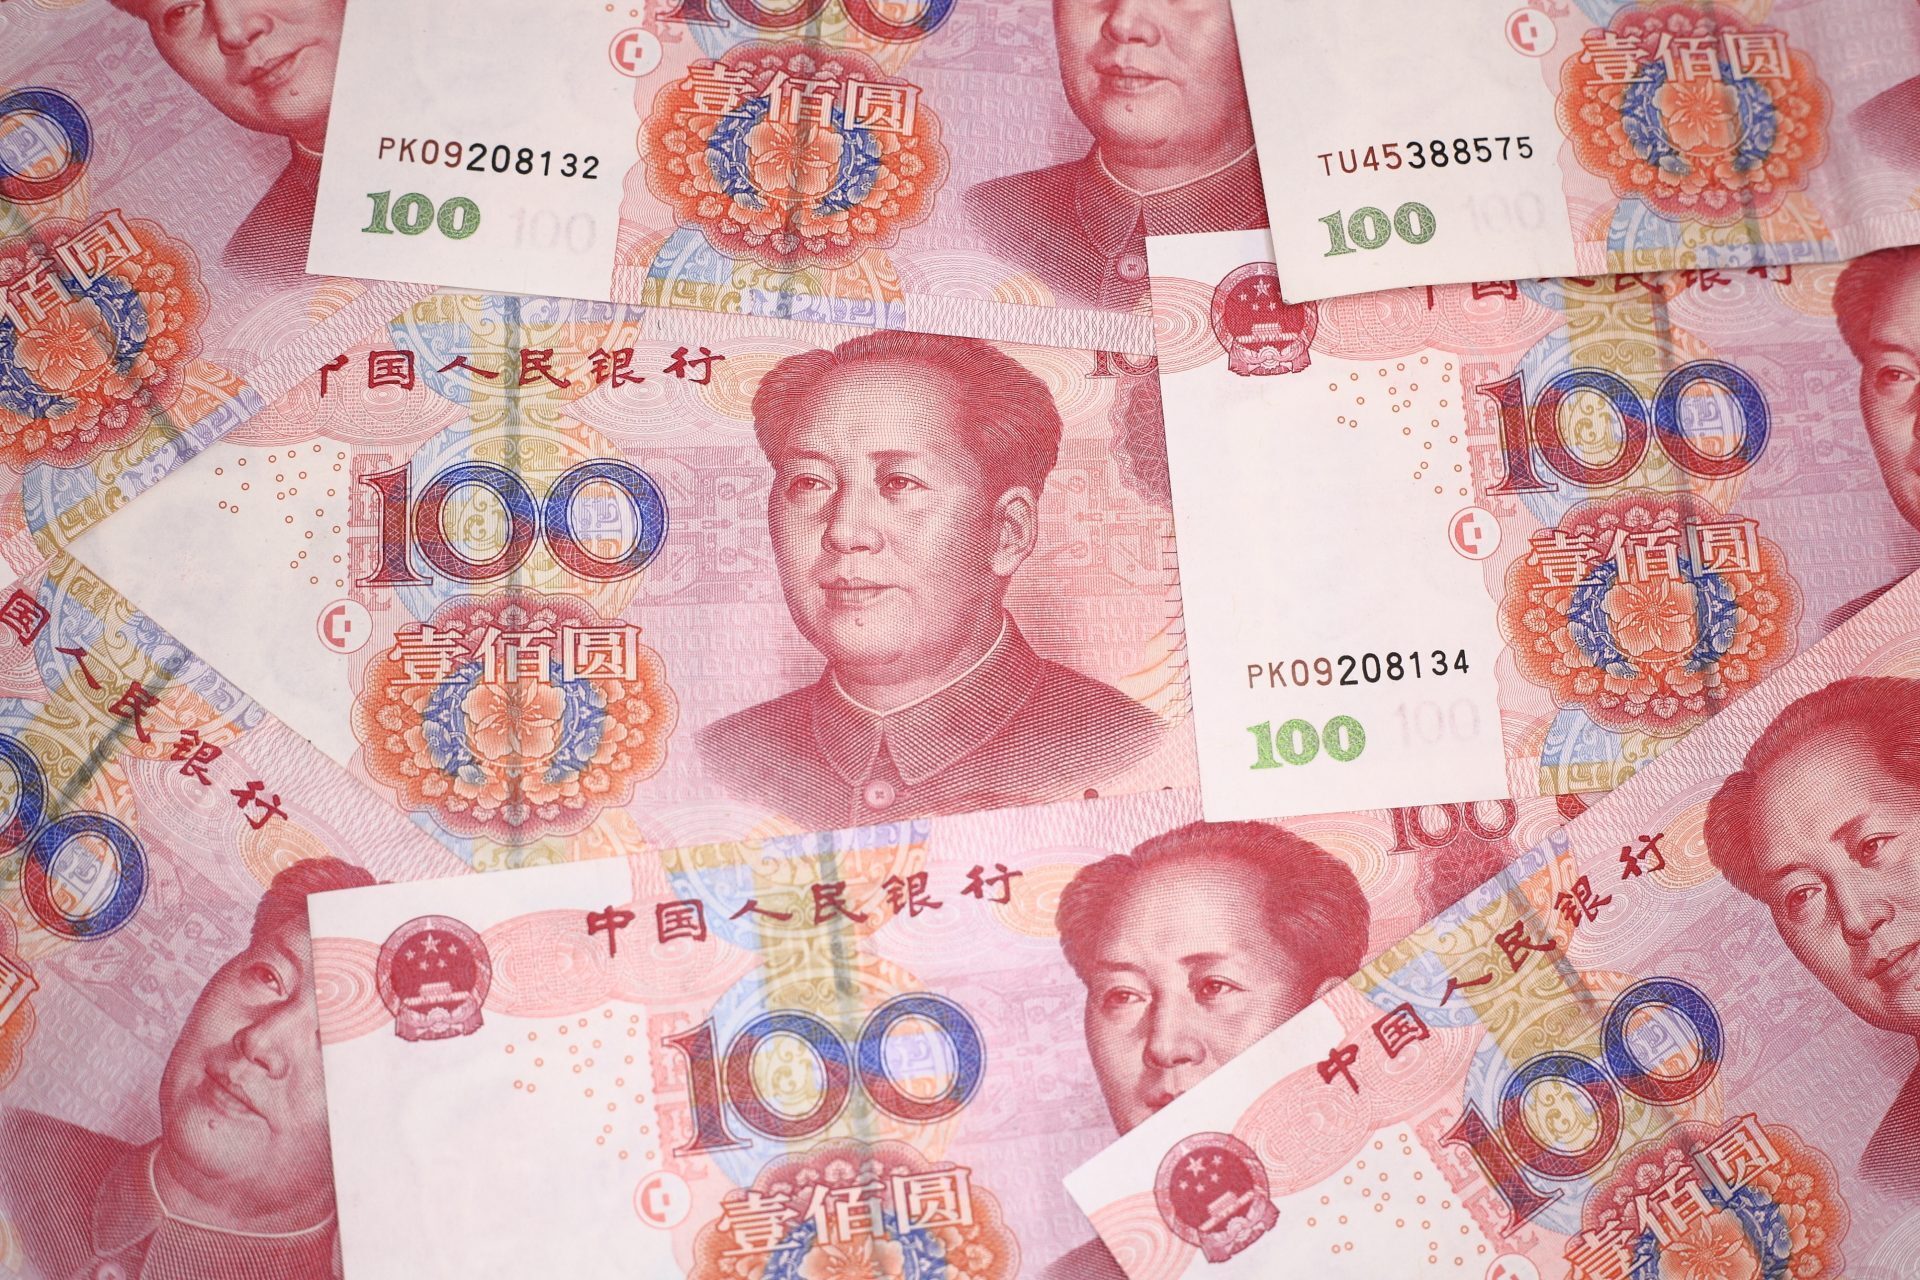 25 юаней в тенге. Китайские деньги картинки. Юань валюта Тайланд. RMB валюта какой страны. Китайские деньги картинки которые дарят на новый год.